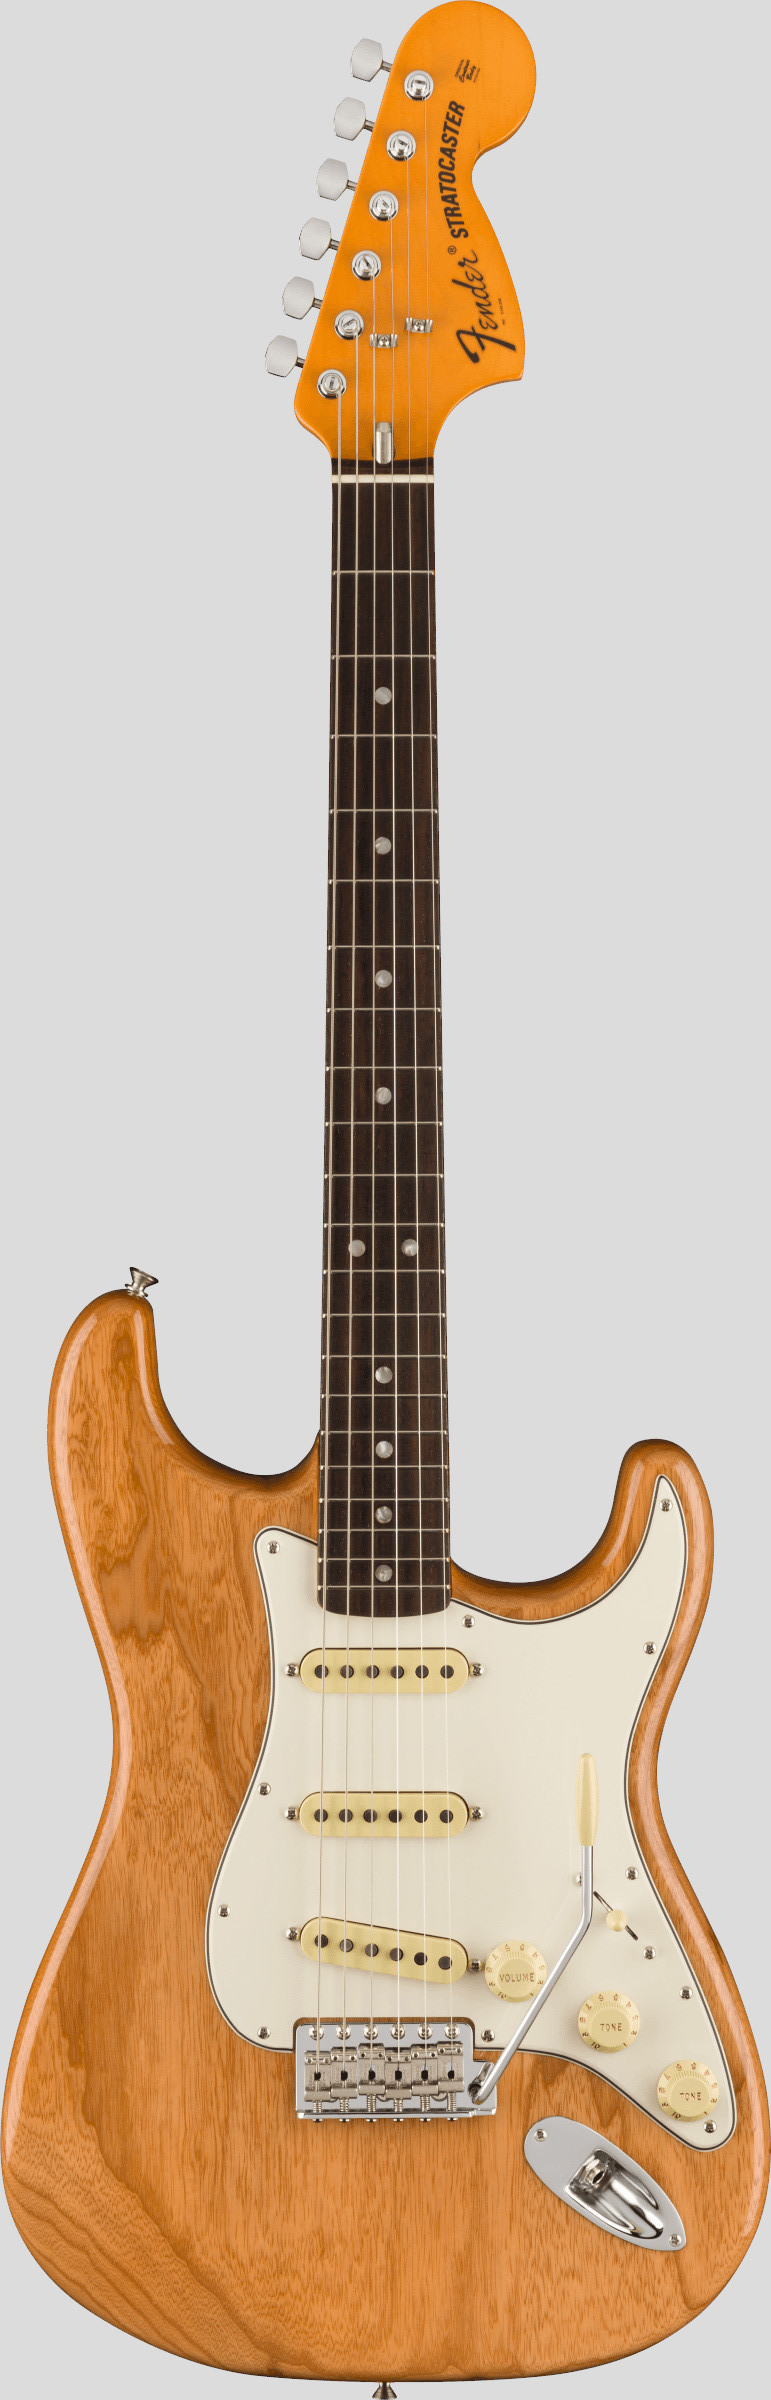 Fender American Vintage II 1973 Stratocaster Aged Natural 1